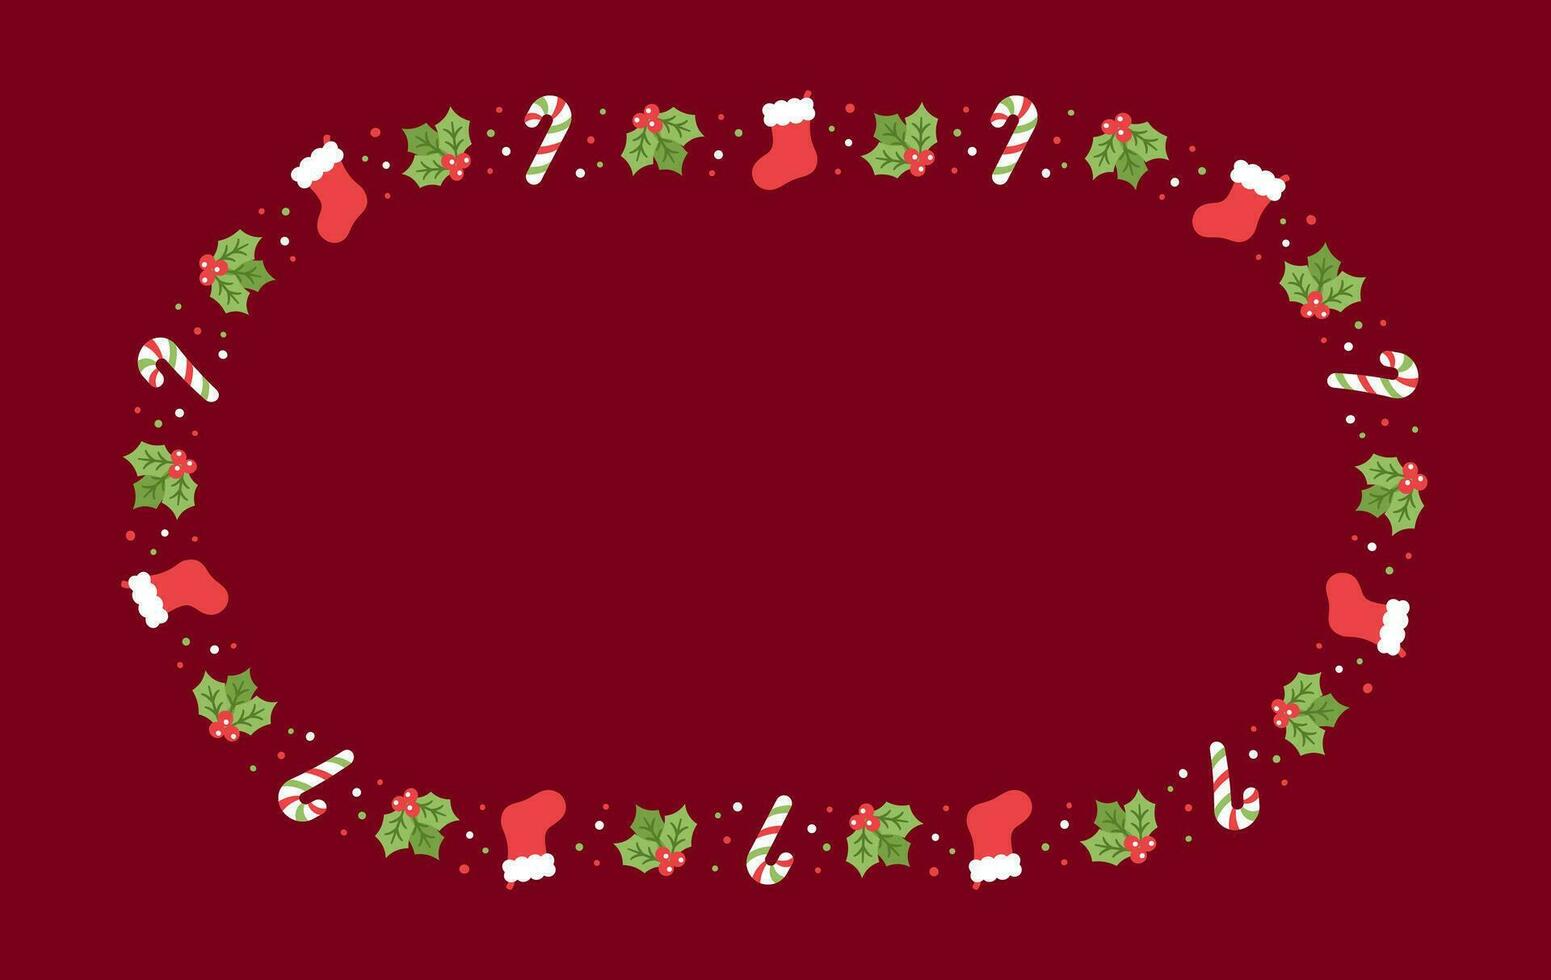 oval Navidad marco borde, invierno fiesta gráficos. linda muérdago, media y caramelo caña patrón, tarjeta y social medios de comunicación enviar modelo vector ilustración.